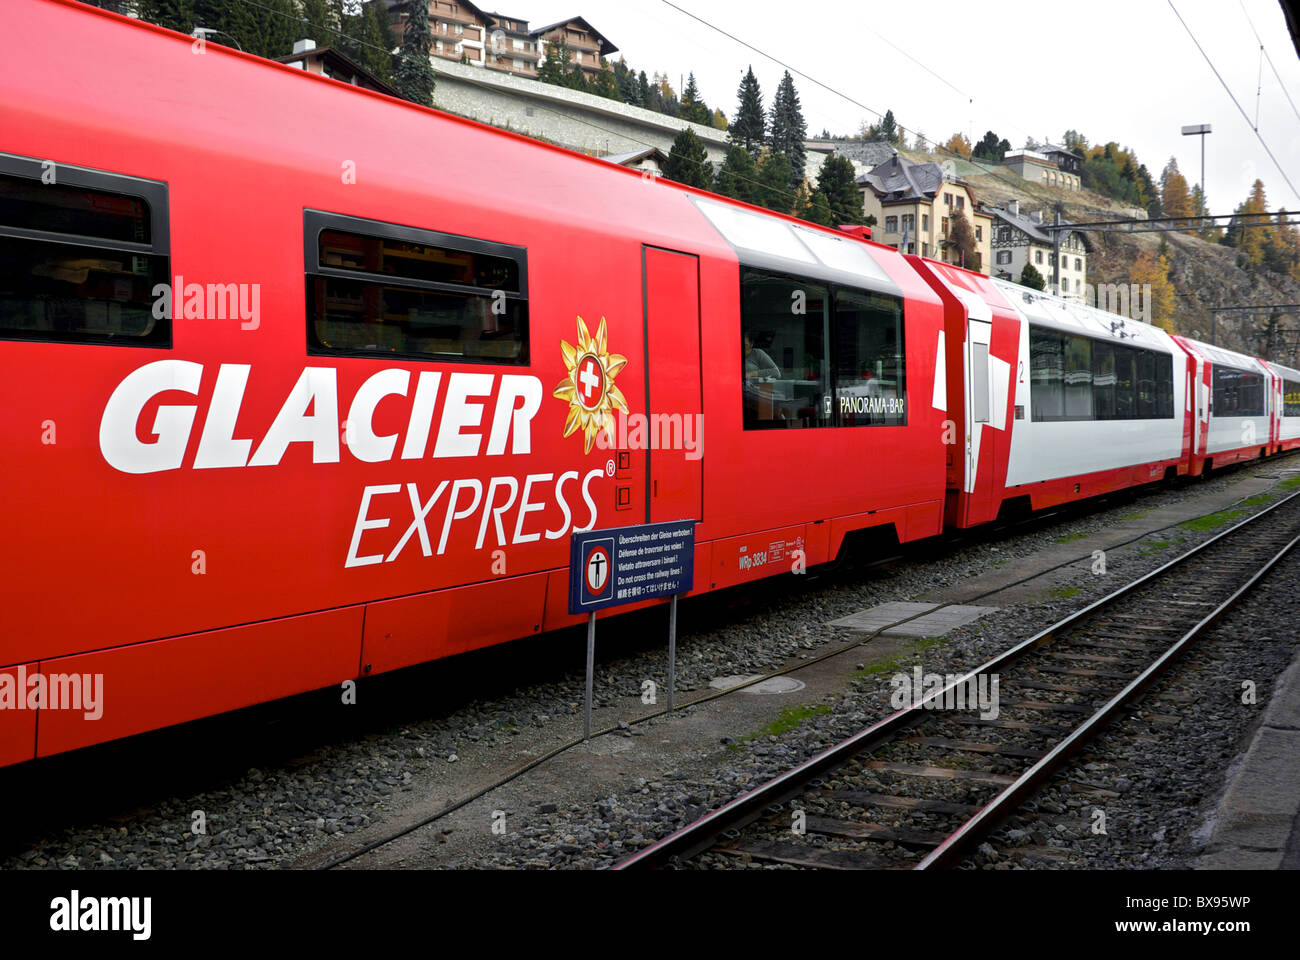 Les wagons de train panoramique électrique des chemins de fer rhétiques Glacier Express gare St. Banque D'Images